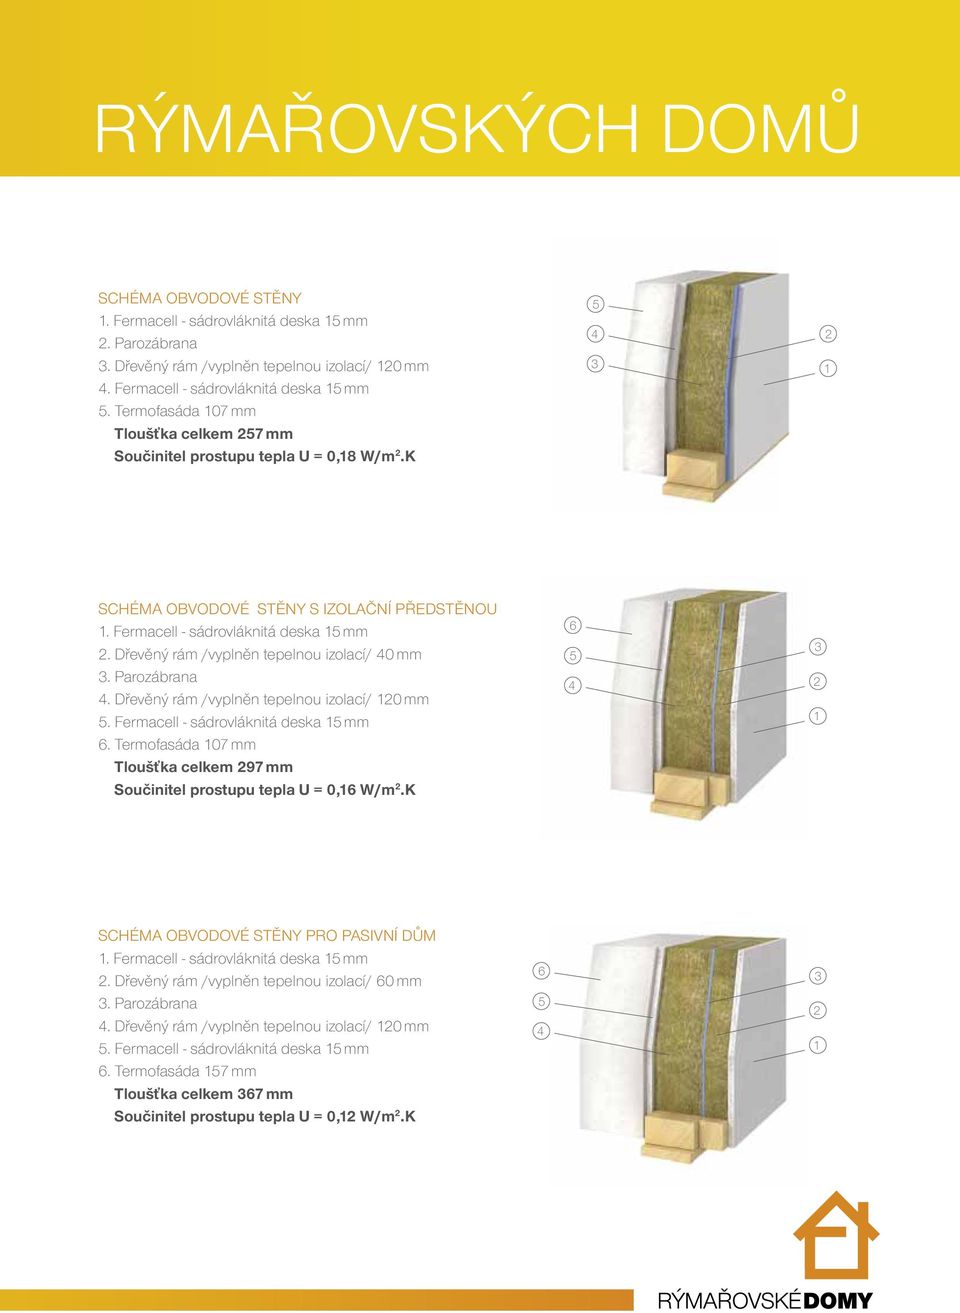 Dřevěný rám /vyplněn tepelnou izolací/ 40 mm 3. Parozábrana 4. Dřevěný rám /vyplněn tepelnou izolací/ 120 mm 5. Fermacell - sádrovláknitá deska 15 mm 6.